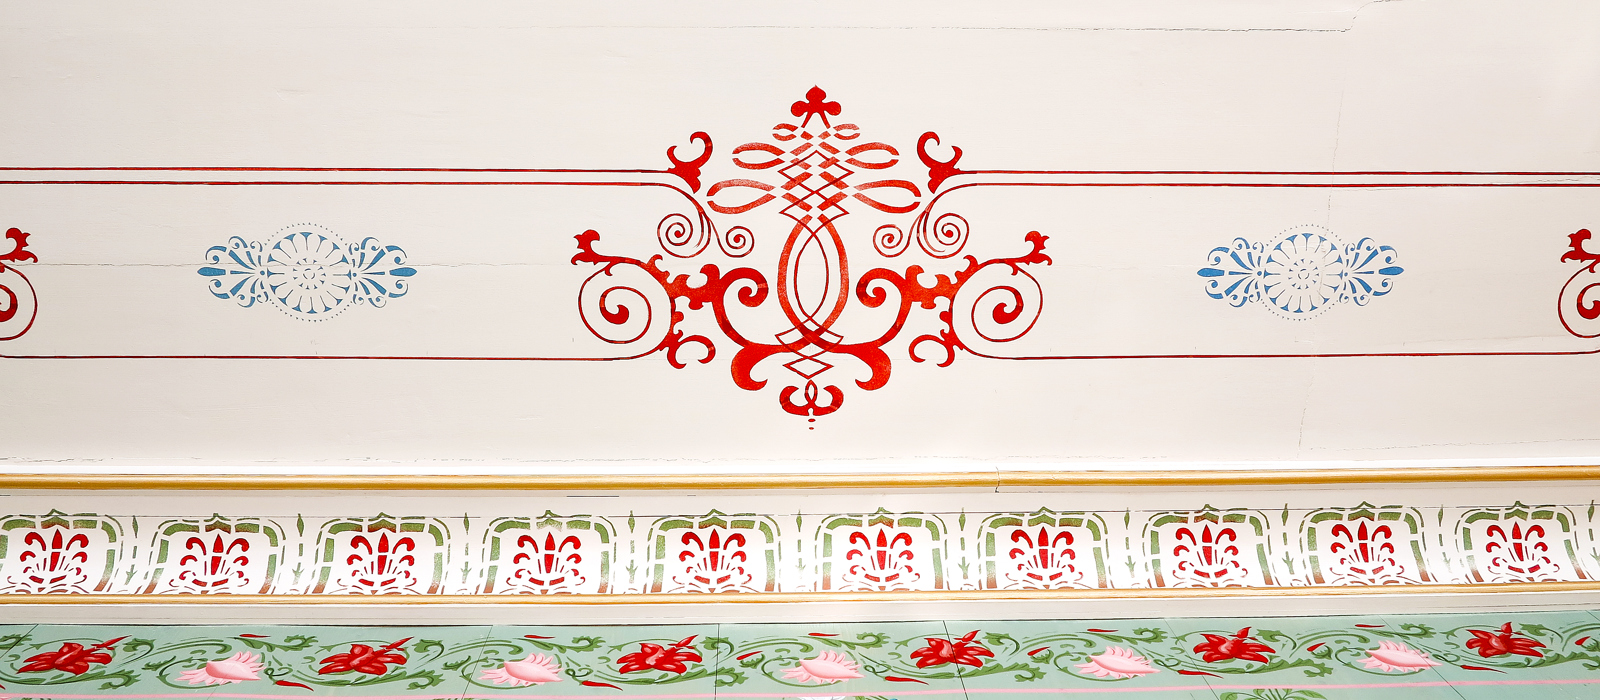 Sjablong og strekdekor malt etter gammelt mønster, av dekorasjonsmaler Anne Louise Gjør. Hovelsrud gård, på Helgøya. Foto: T.H. Frøyset